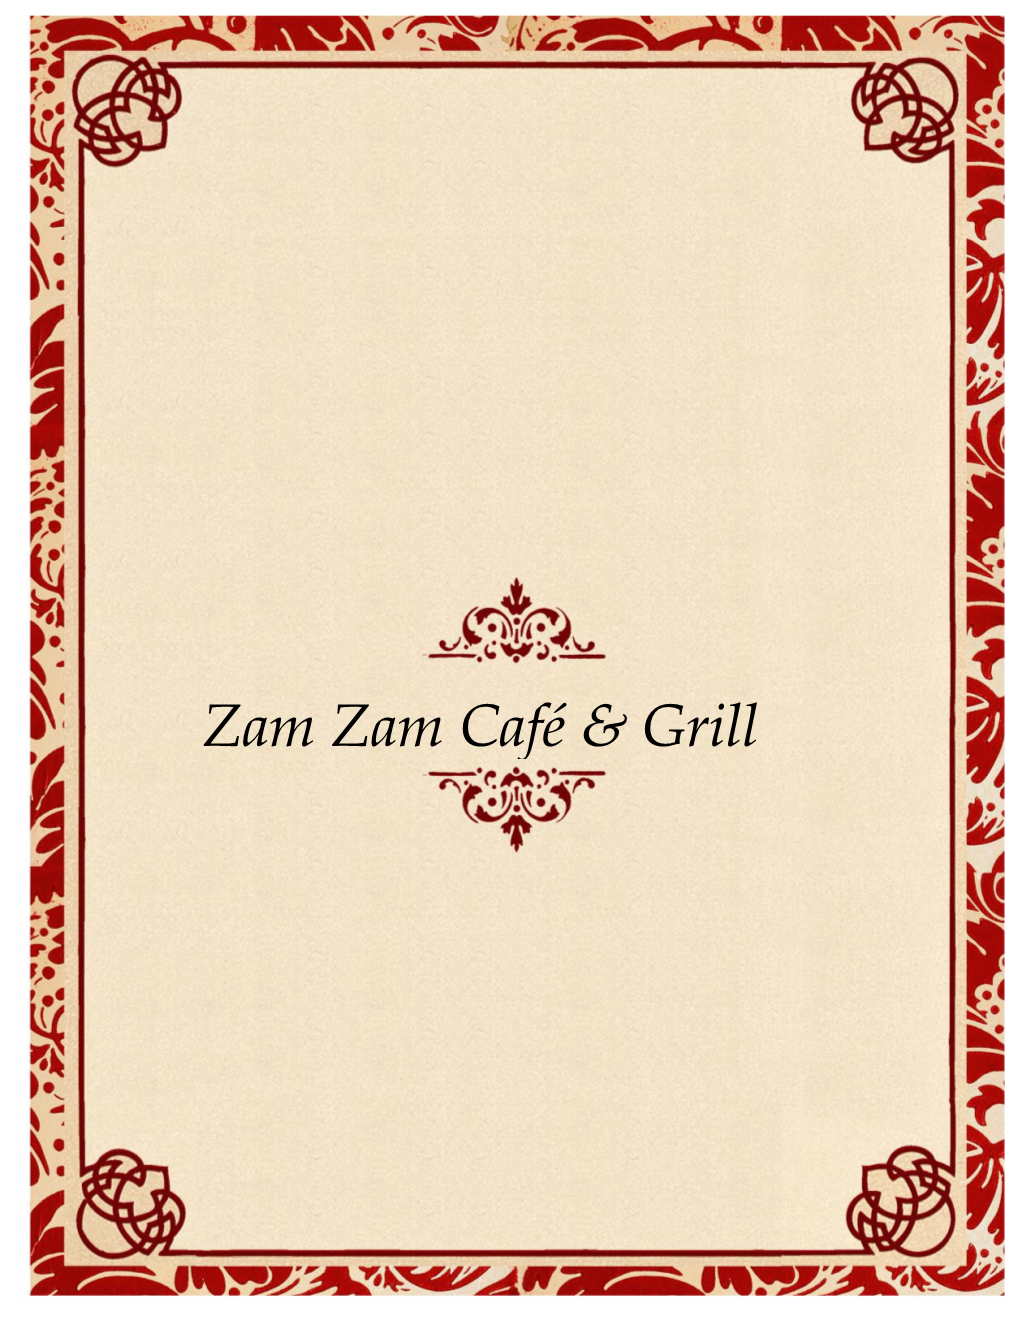 Zam Zam Café & Grill